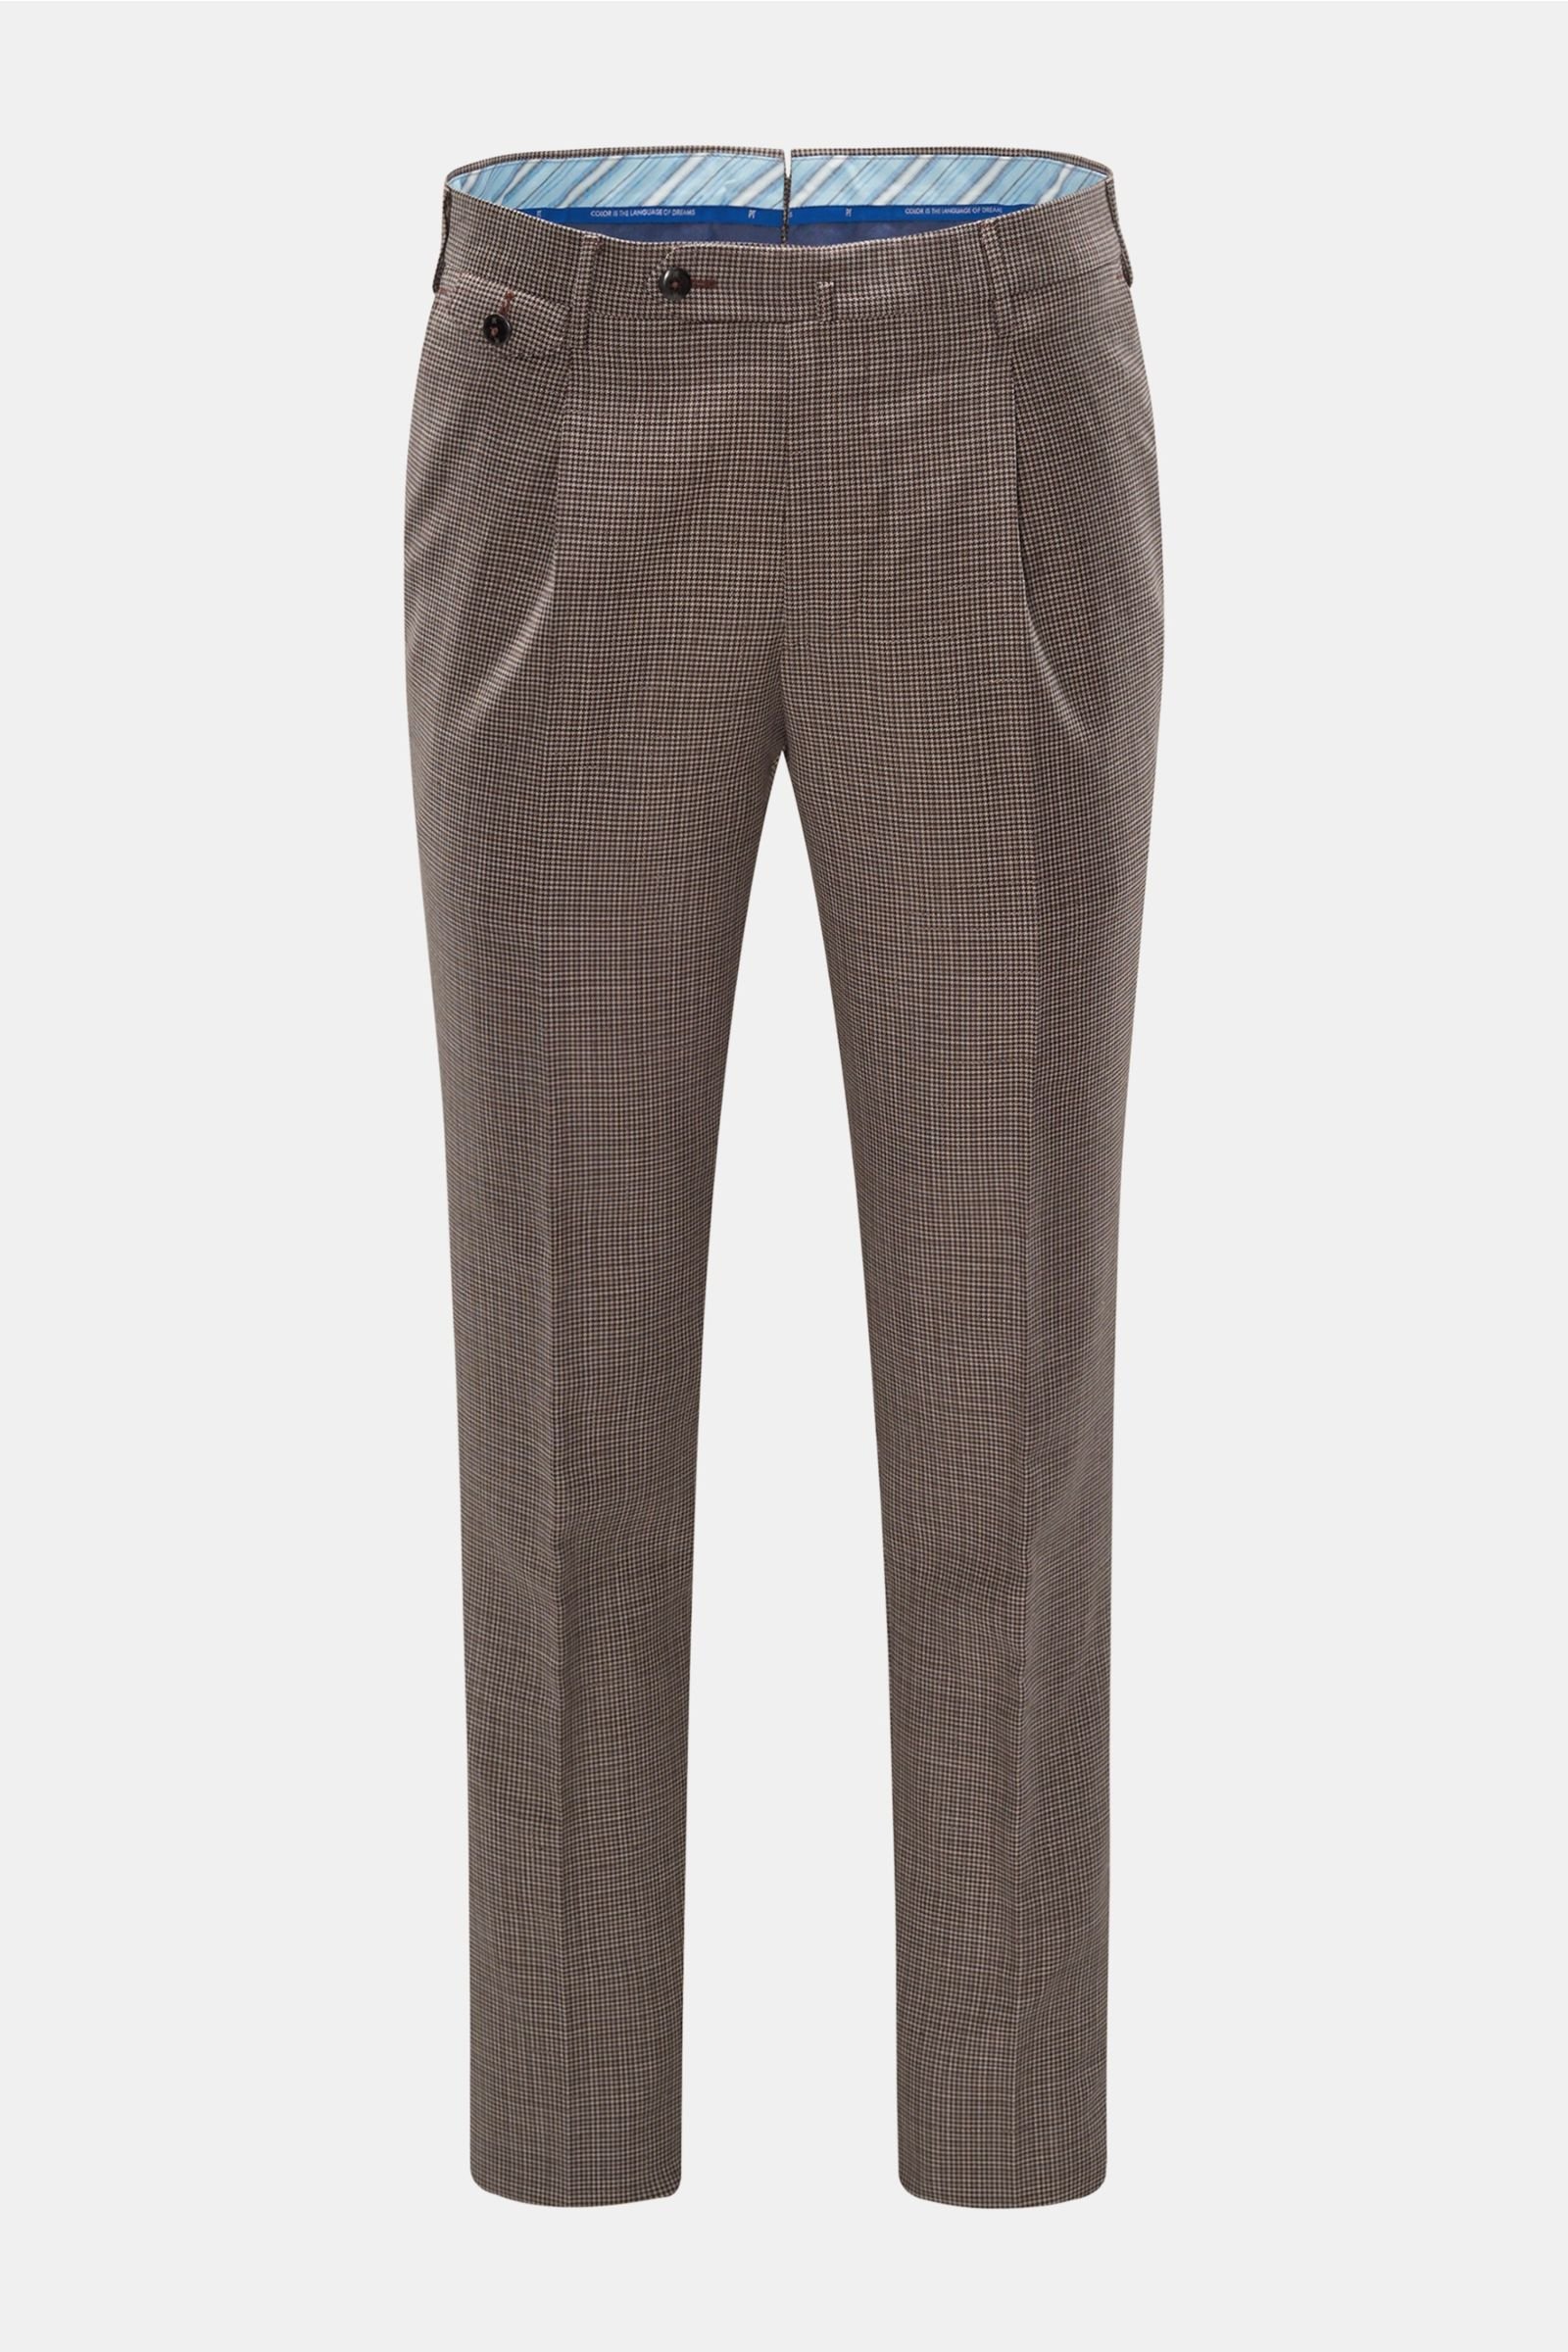 Wool trousers 'Gentleman Fit' dark brown checked